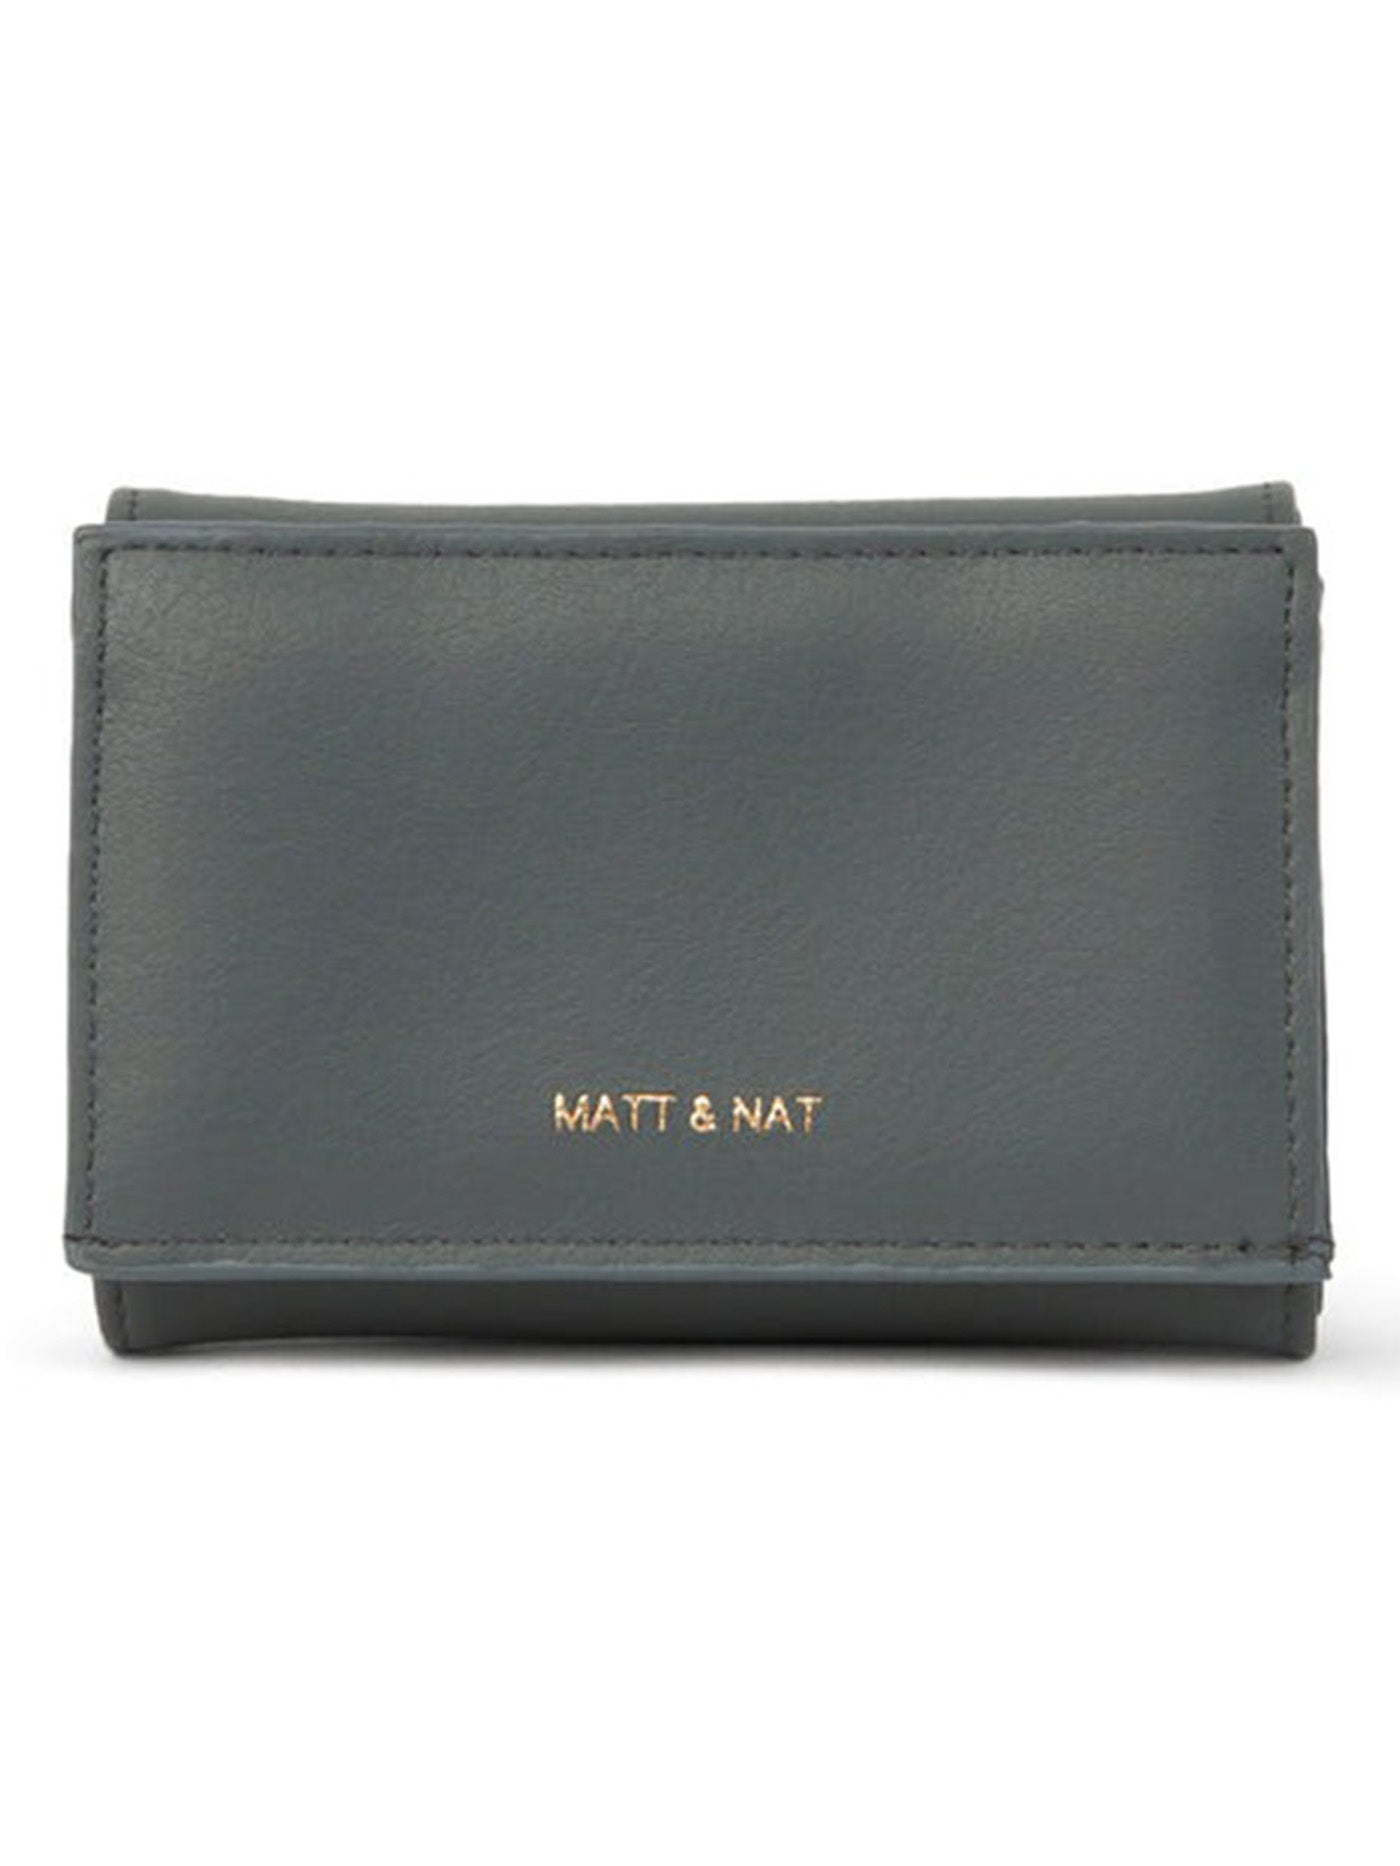 Matt & Nat Poem Arbor Collection Wallet